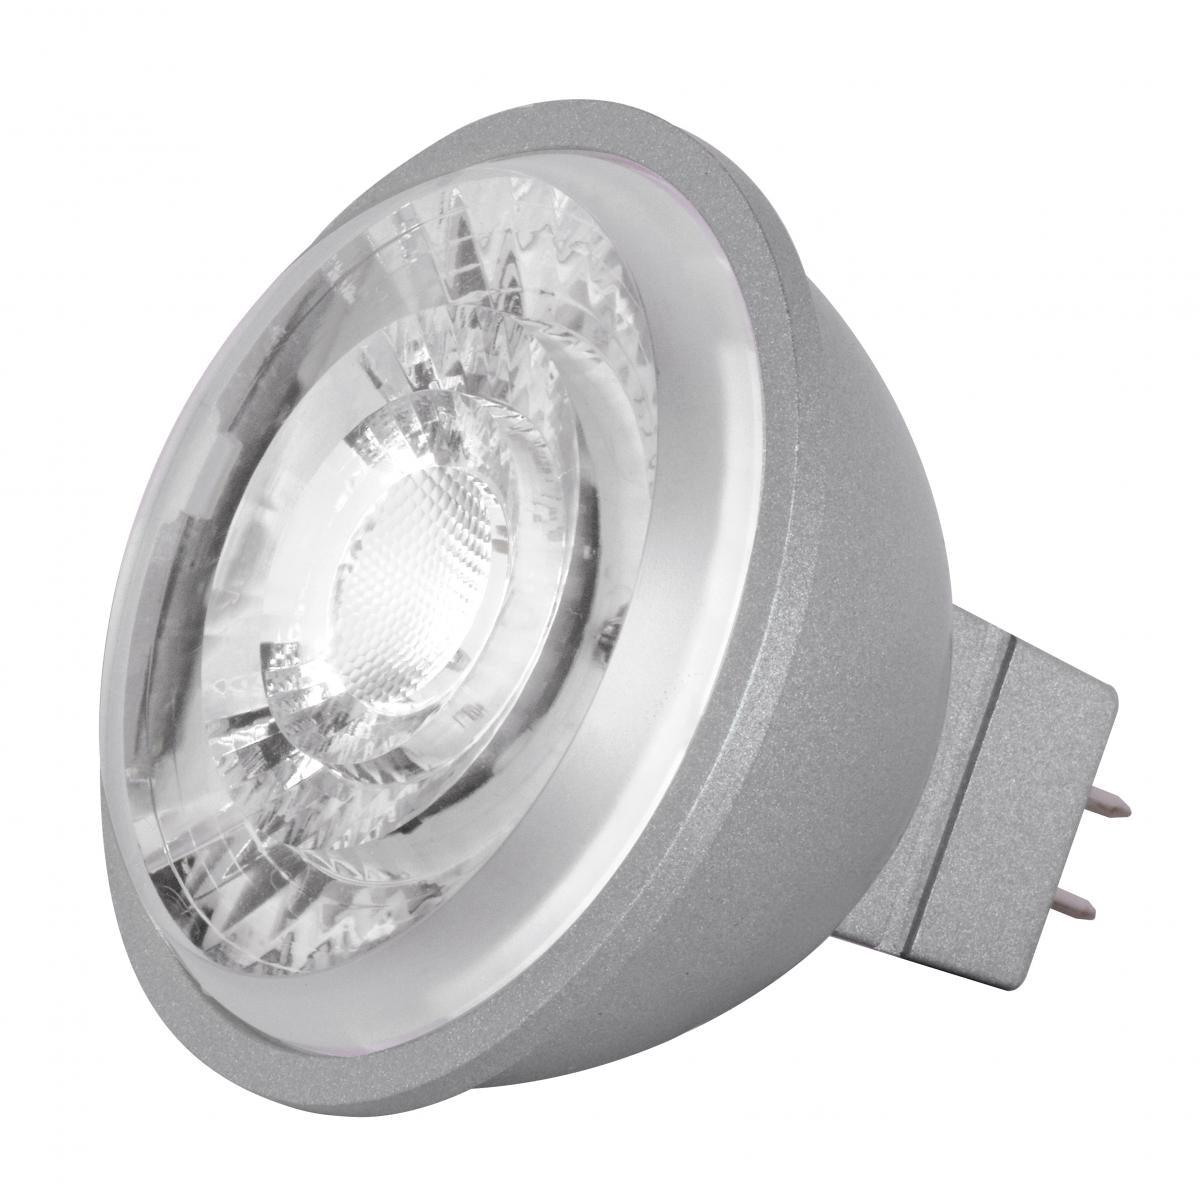 MR16 Reflector LED bulb, 8 watt, 490 Lumens, 4000K, GU5.3 Base, 15 Deg. Spot - Bees Lighting